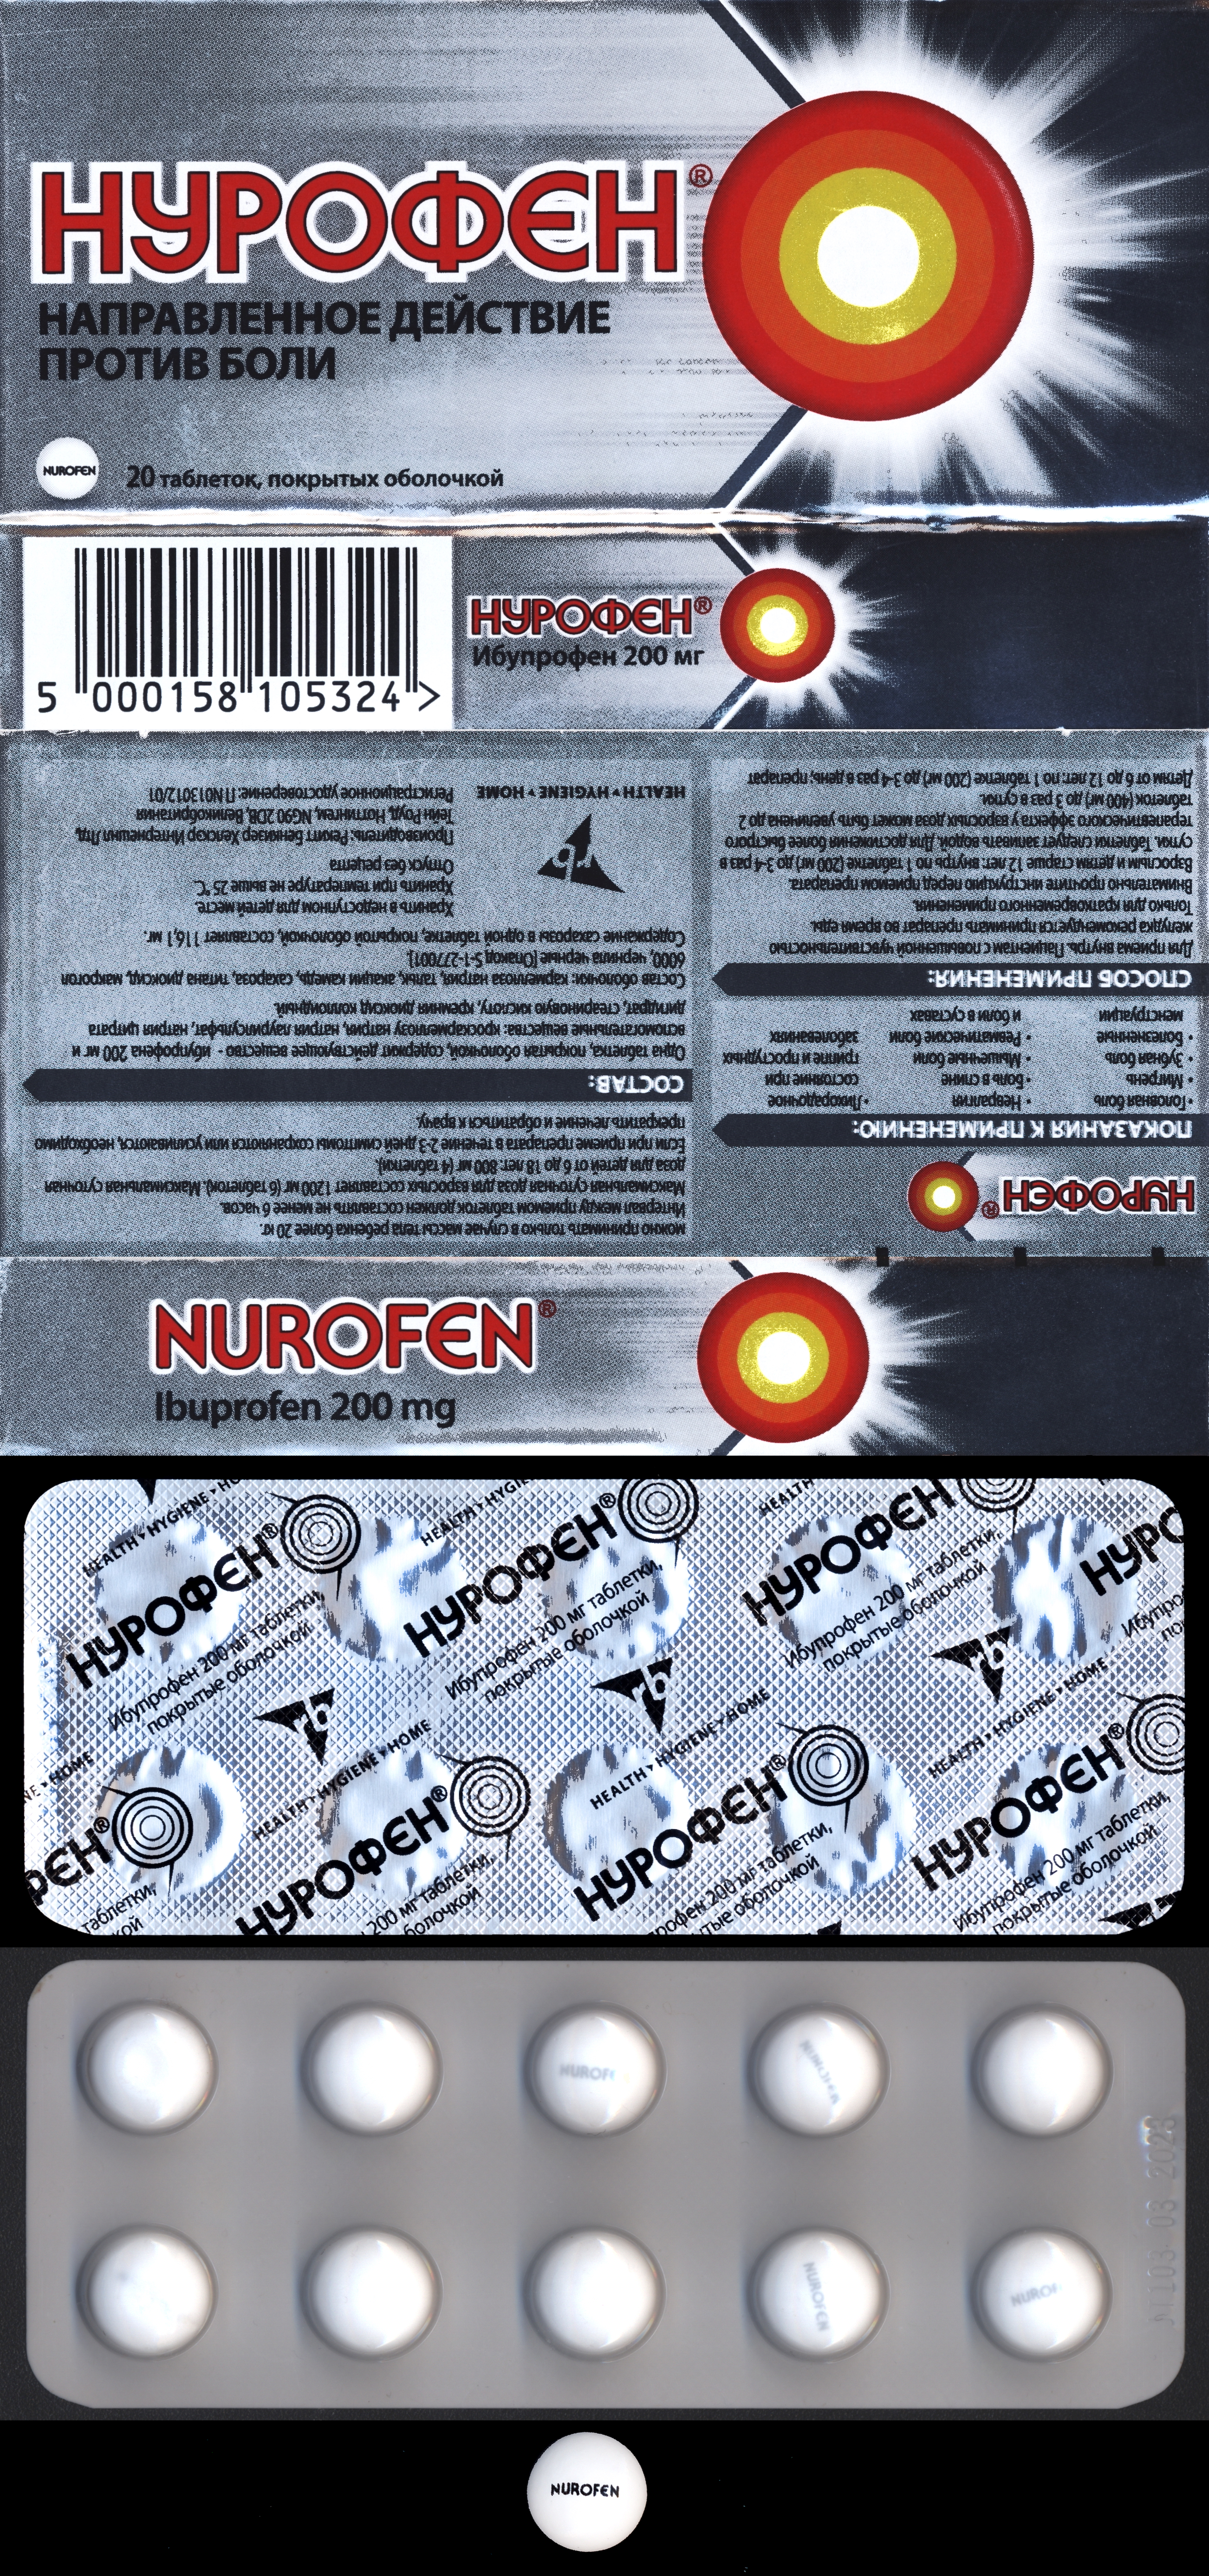 Нурофен какое действие. Нурофен 100 мг таблетки. Нурофен 250 мг таблетки. Нурофен капсулы 250. Нестероидные противовоспалительные препараты нурофен.